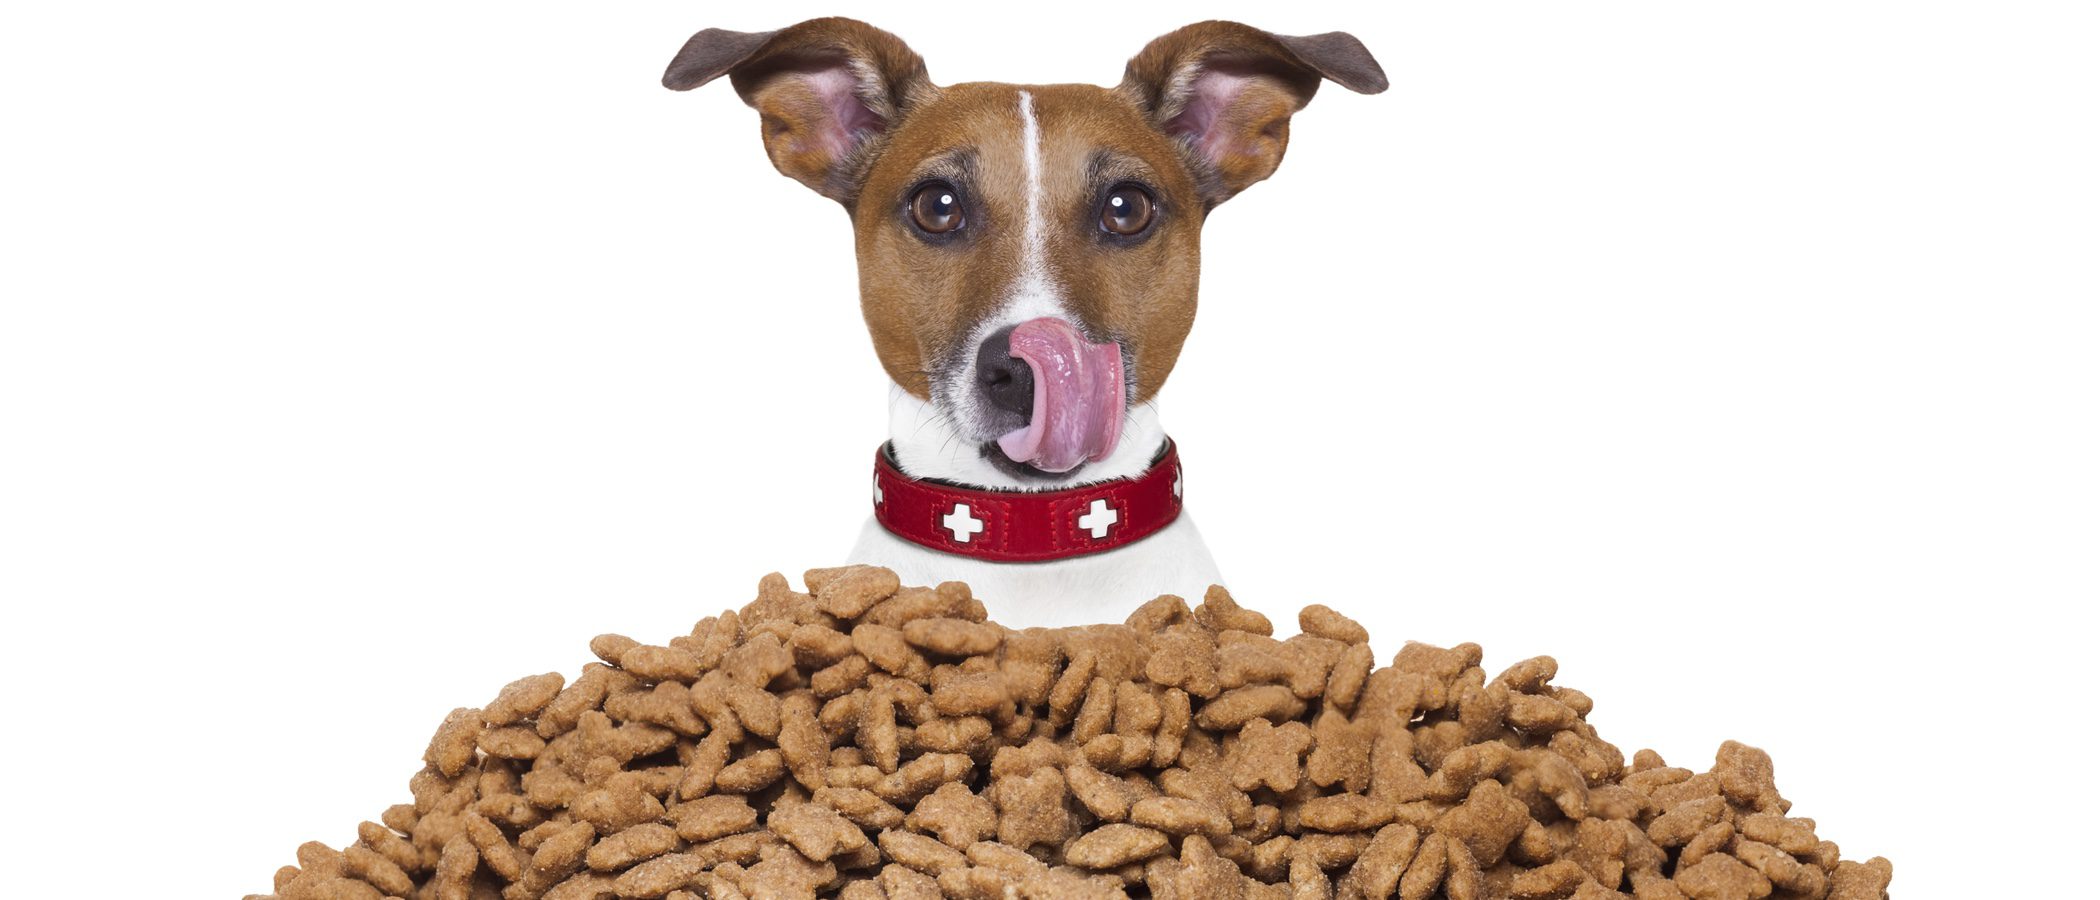 Alimentar a mi mascota: ¿Qué pienso es el más adecuado para mi perro?